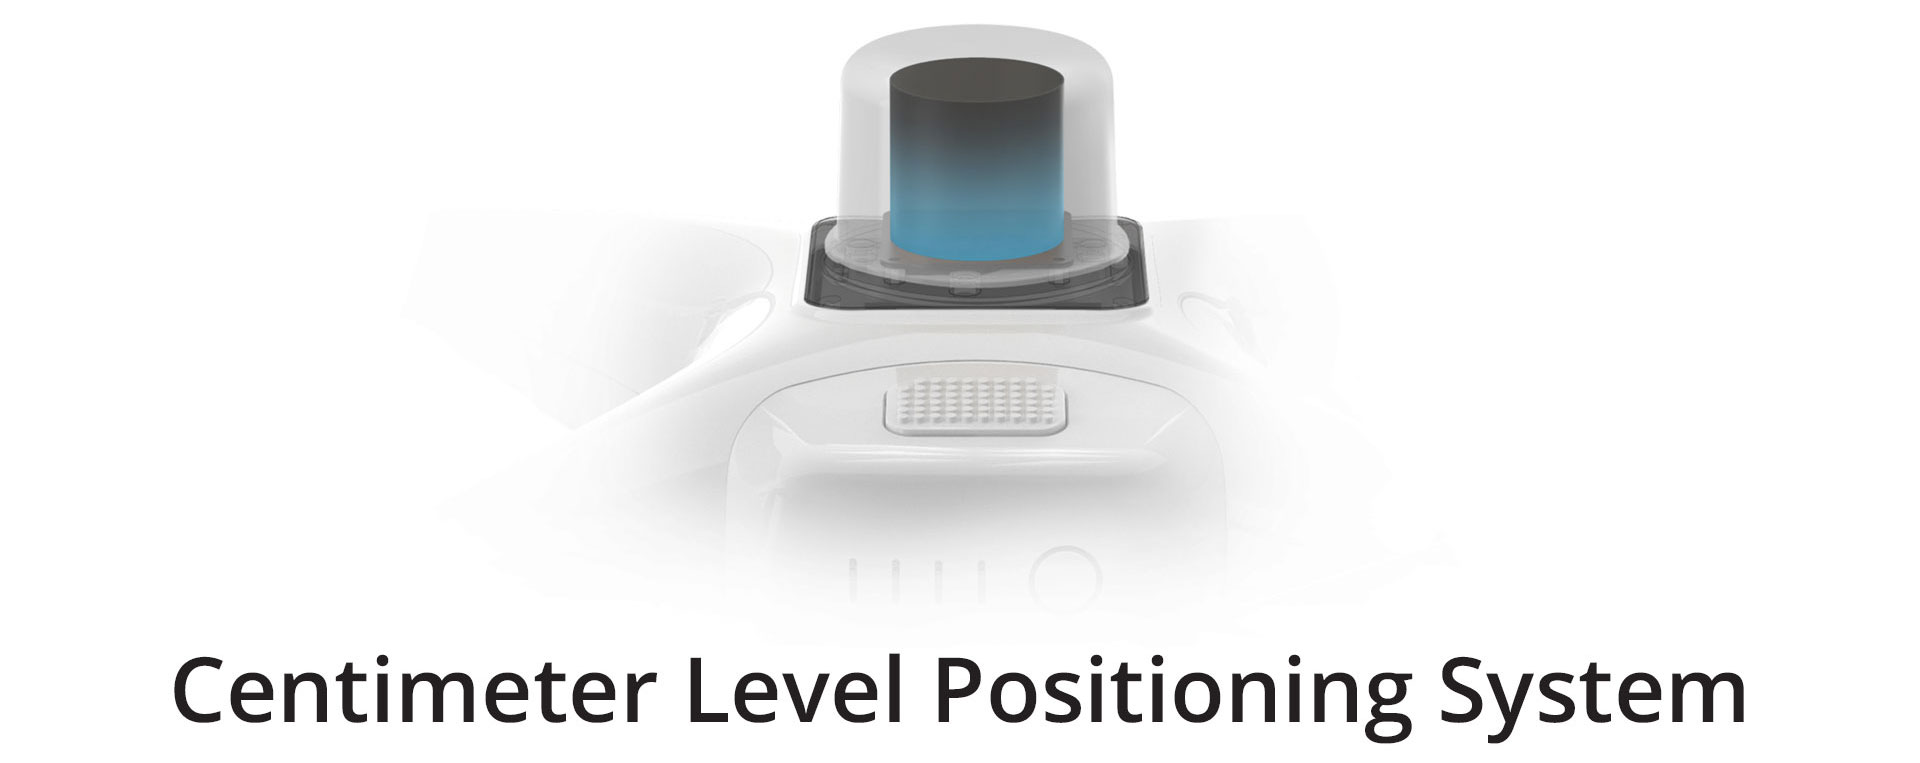 DJI Phantom 4 RTK Centimeter Level Positioning System